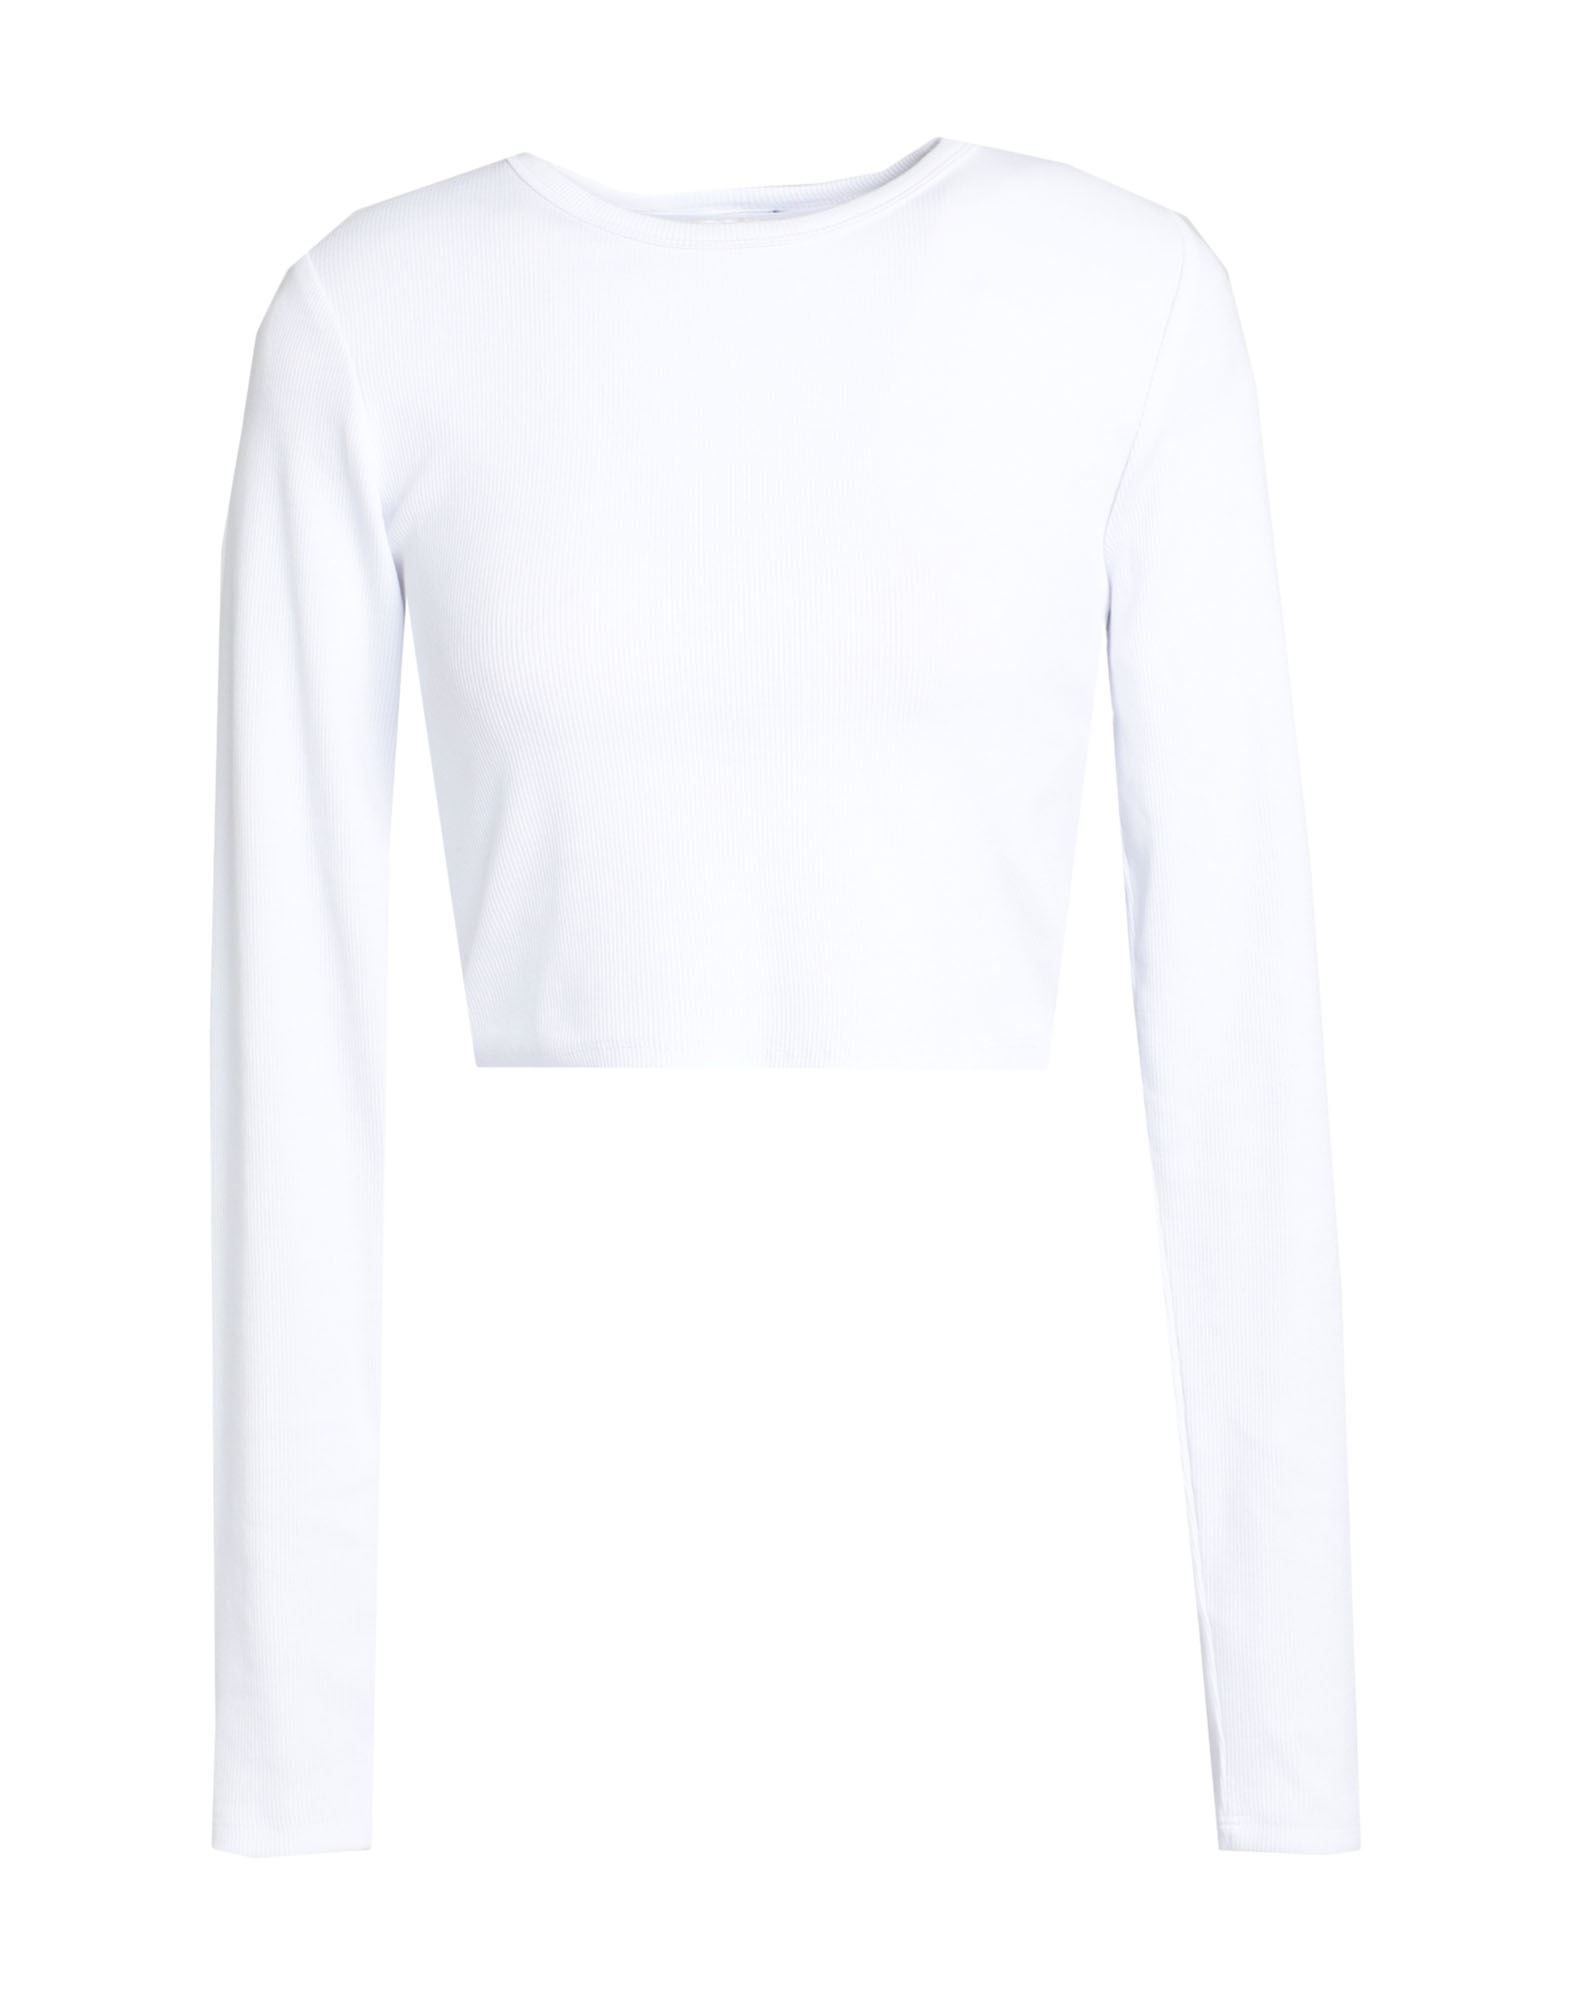 Jjxx By Jack & Jones Woman T-shirt White Size L Cotton, Elastane